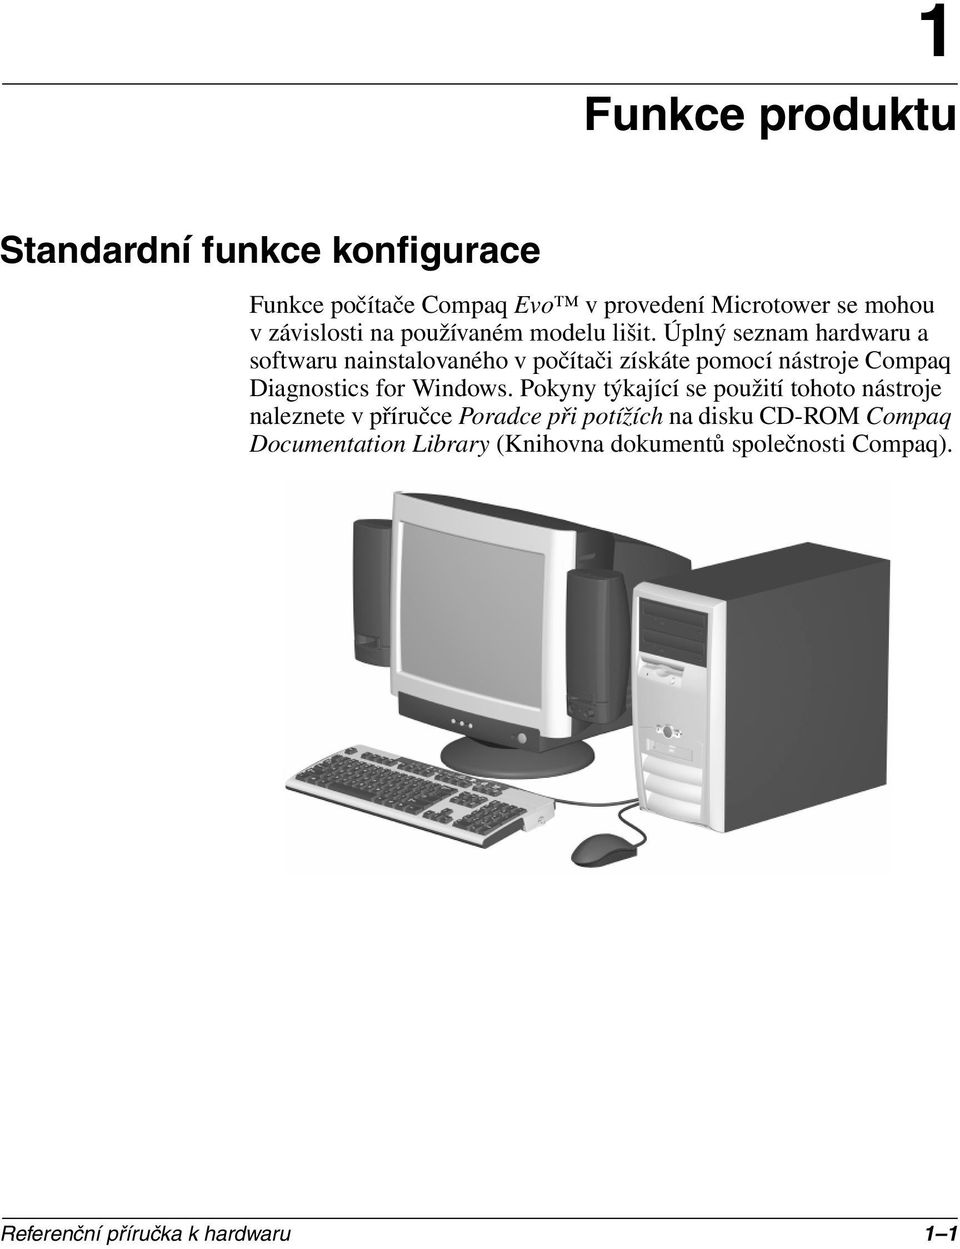 Úplný seznam hardwaru a softwaru nainstalovaného v počítači získáte pomocí nástroje Compaq Diagnostics for Windows.